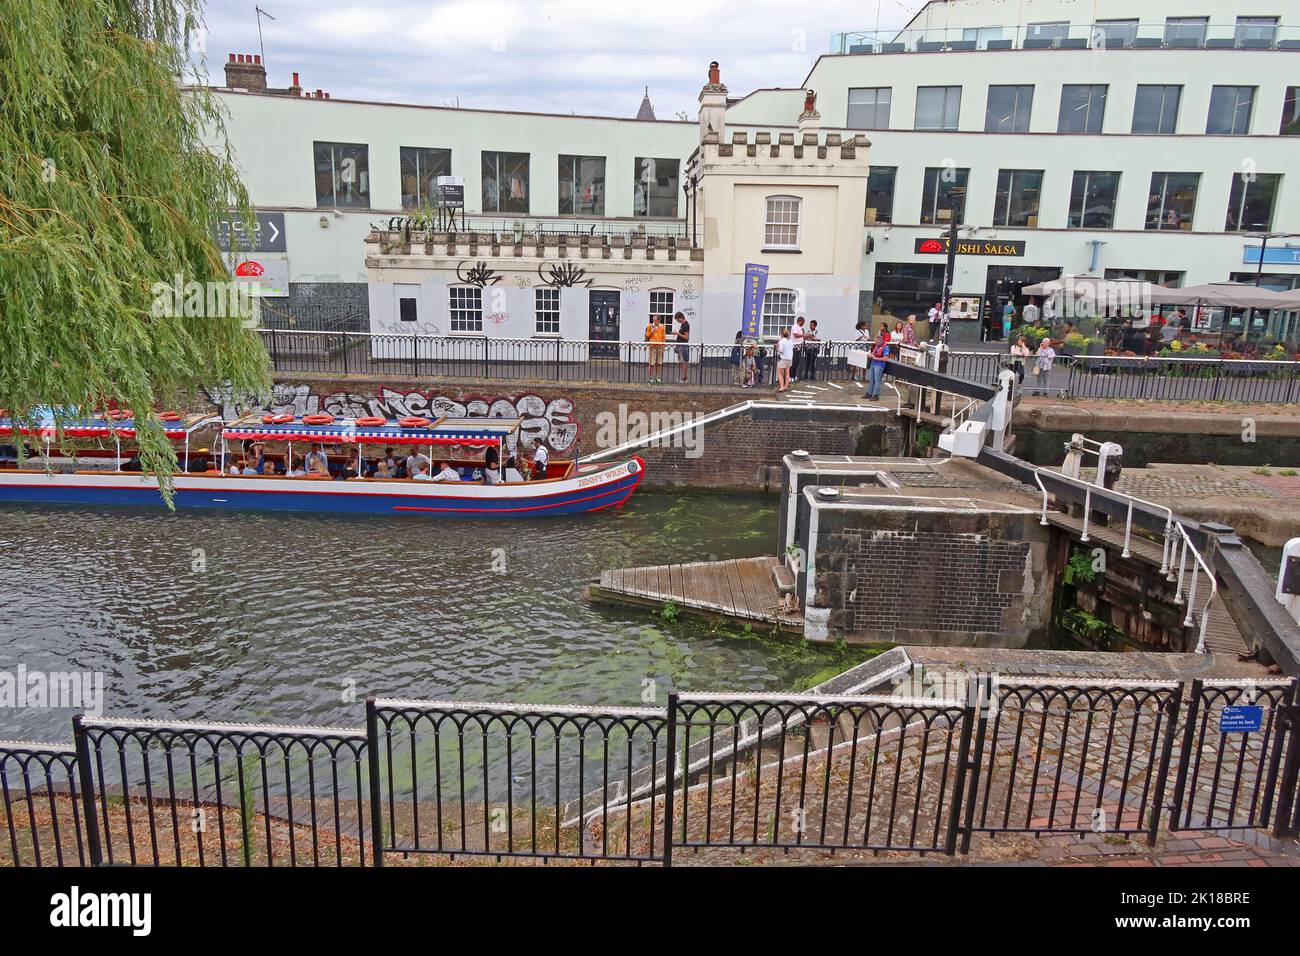 The Jenny Wren, bateau de jour sur le canal, à Camden Lock place, nord de Londres, Angleterre, Royaume-Uni, NW1 8AF Banque D'Images